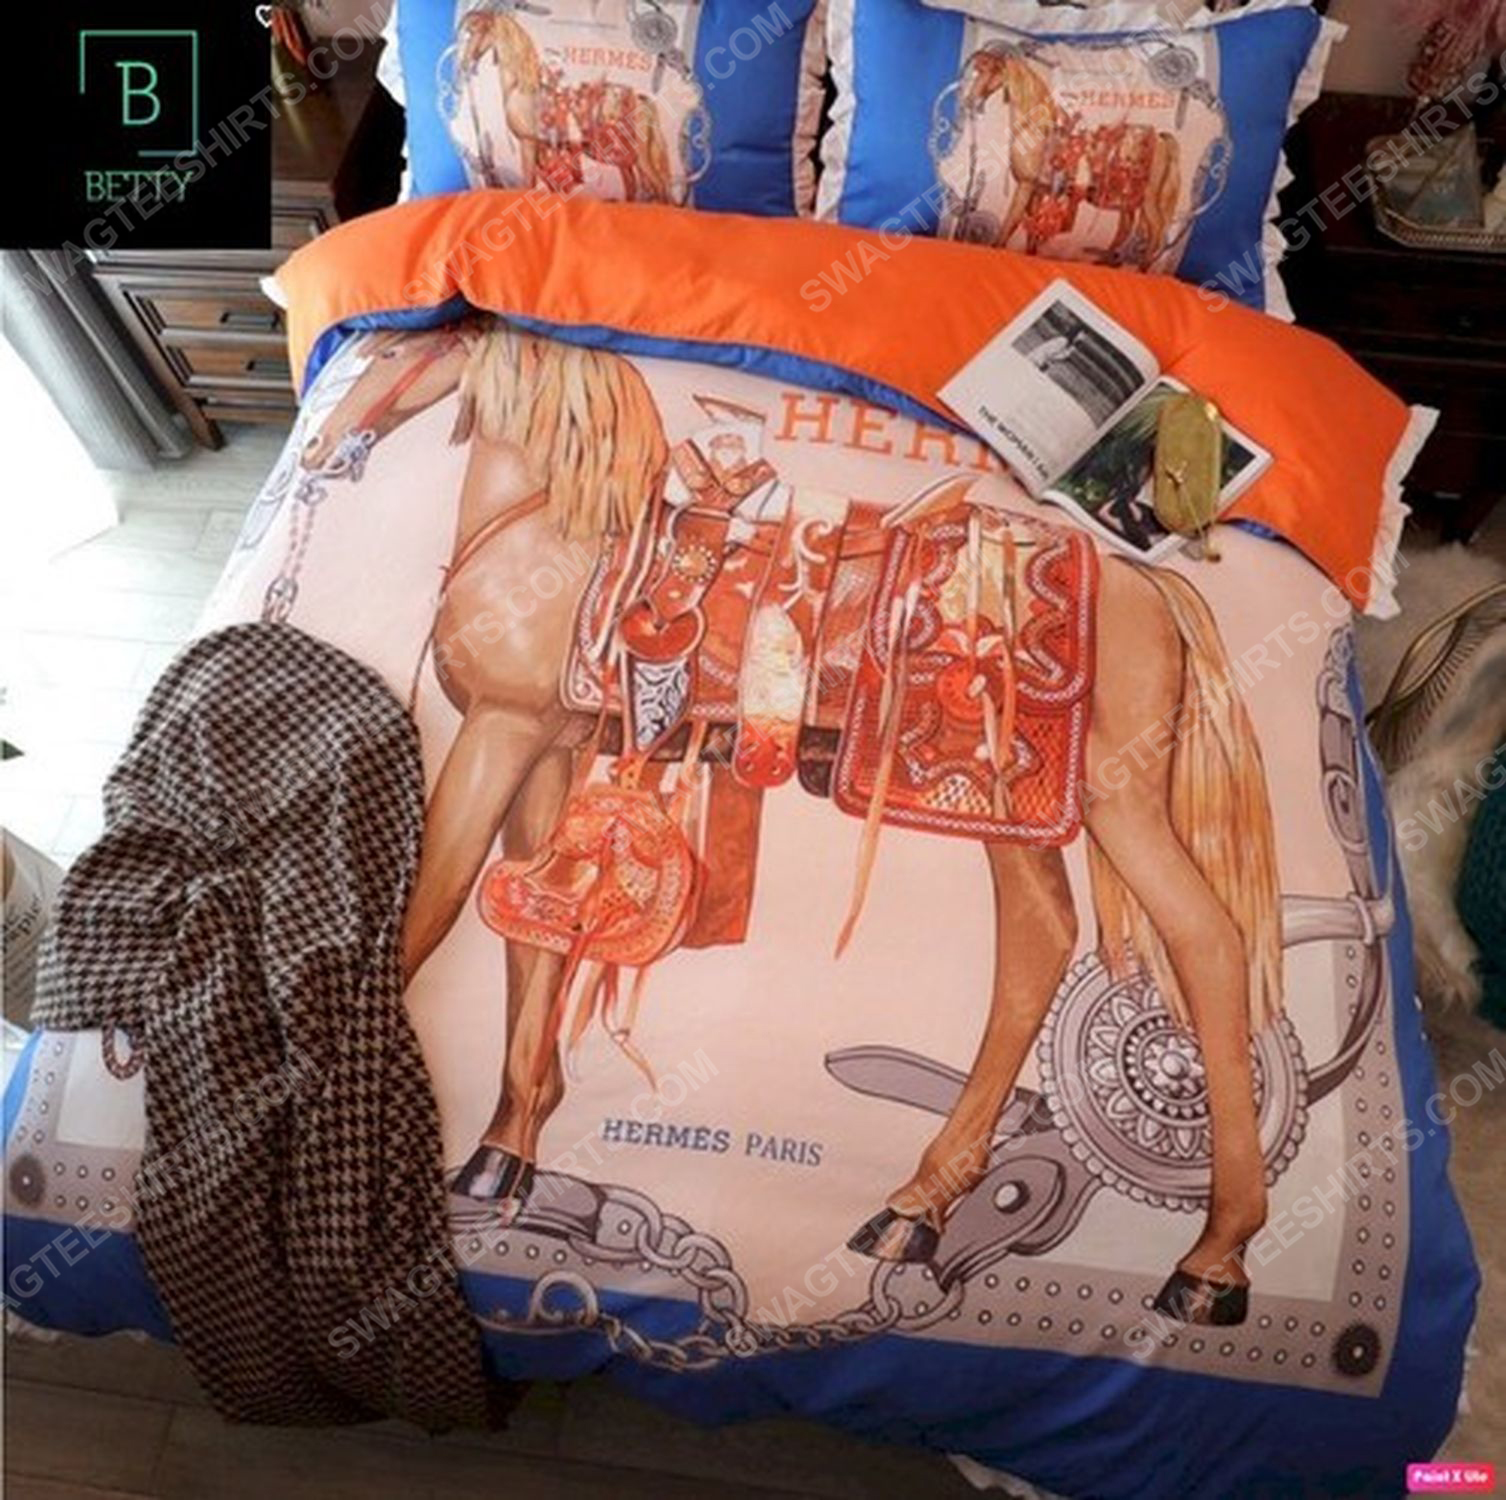 Hermes and horse symbol full print duvet cover bedding set 1